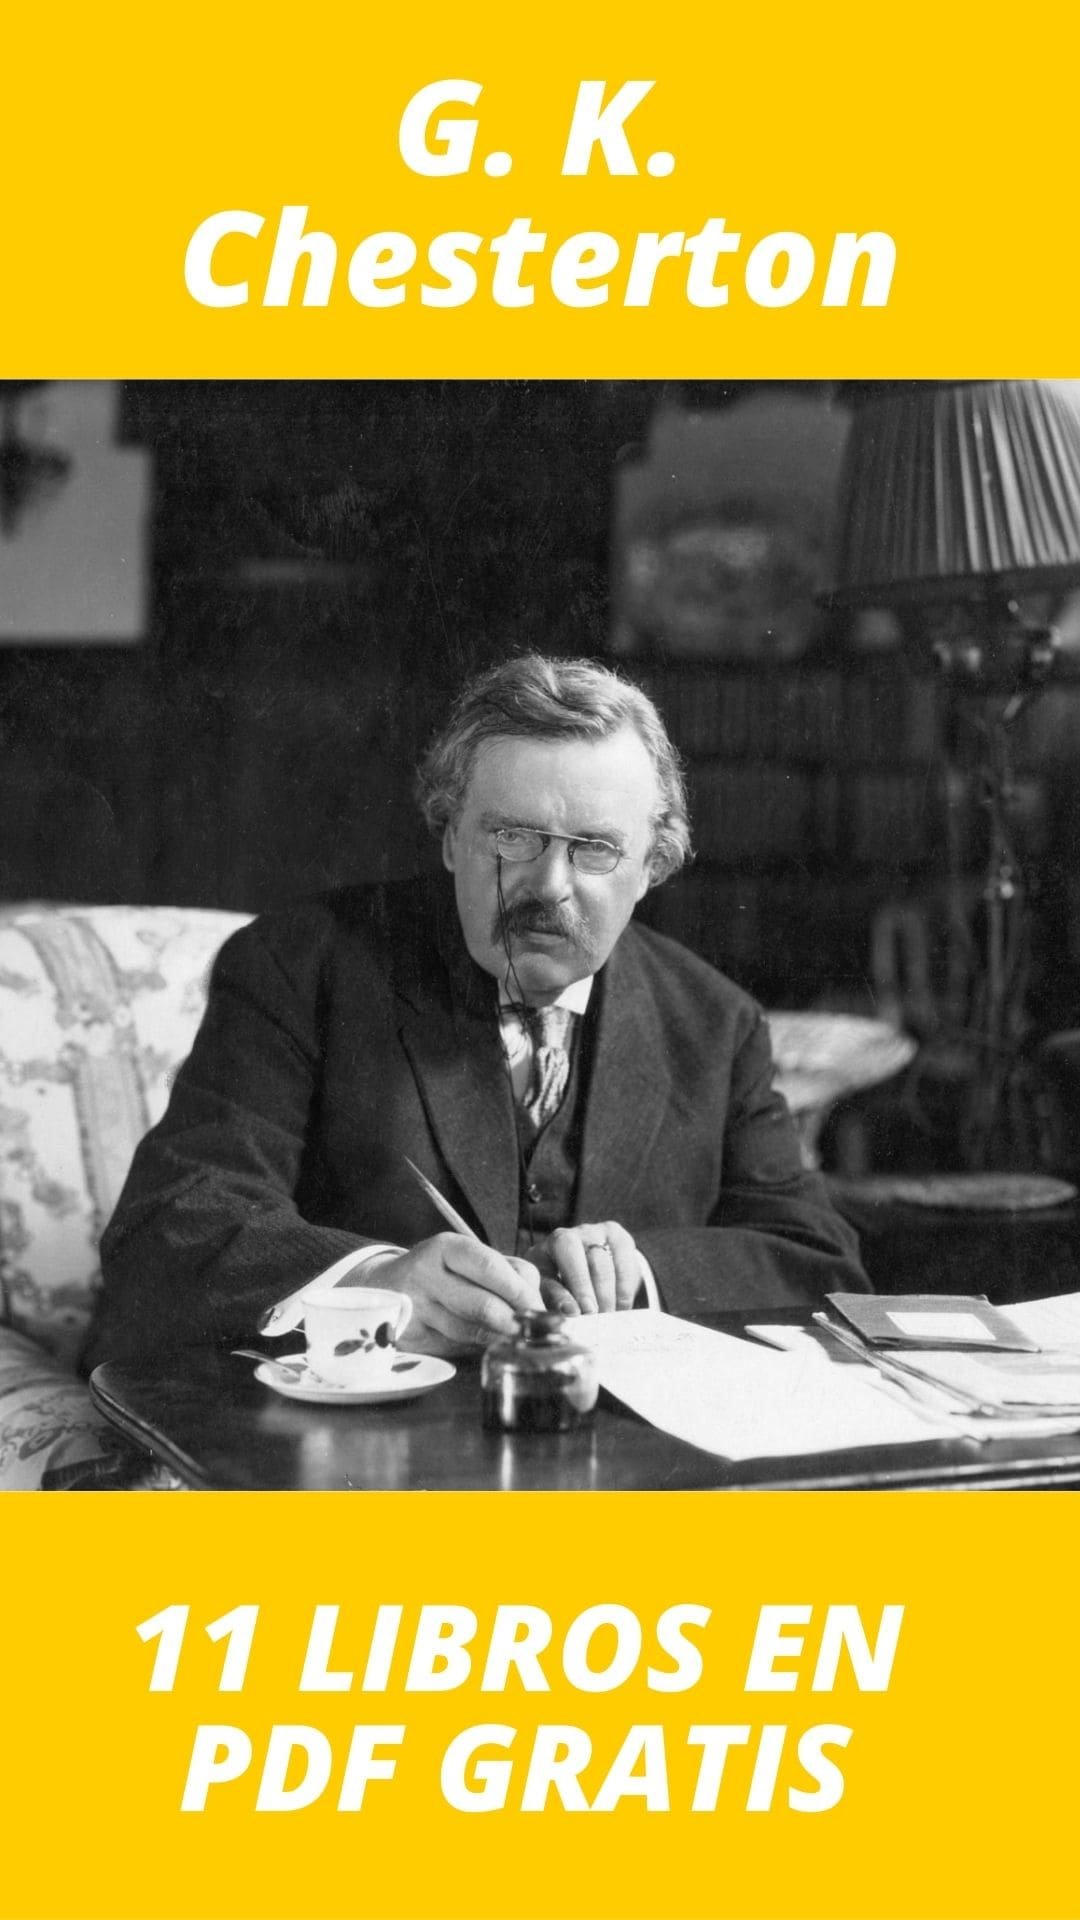 Libros de G. K. Chesterton Gratis en PDF